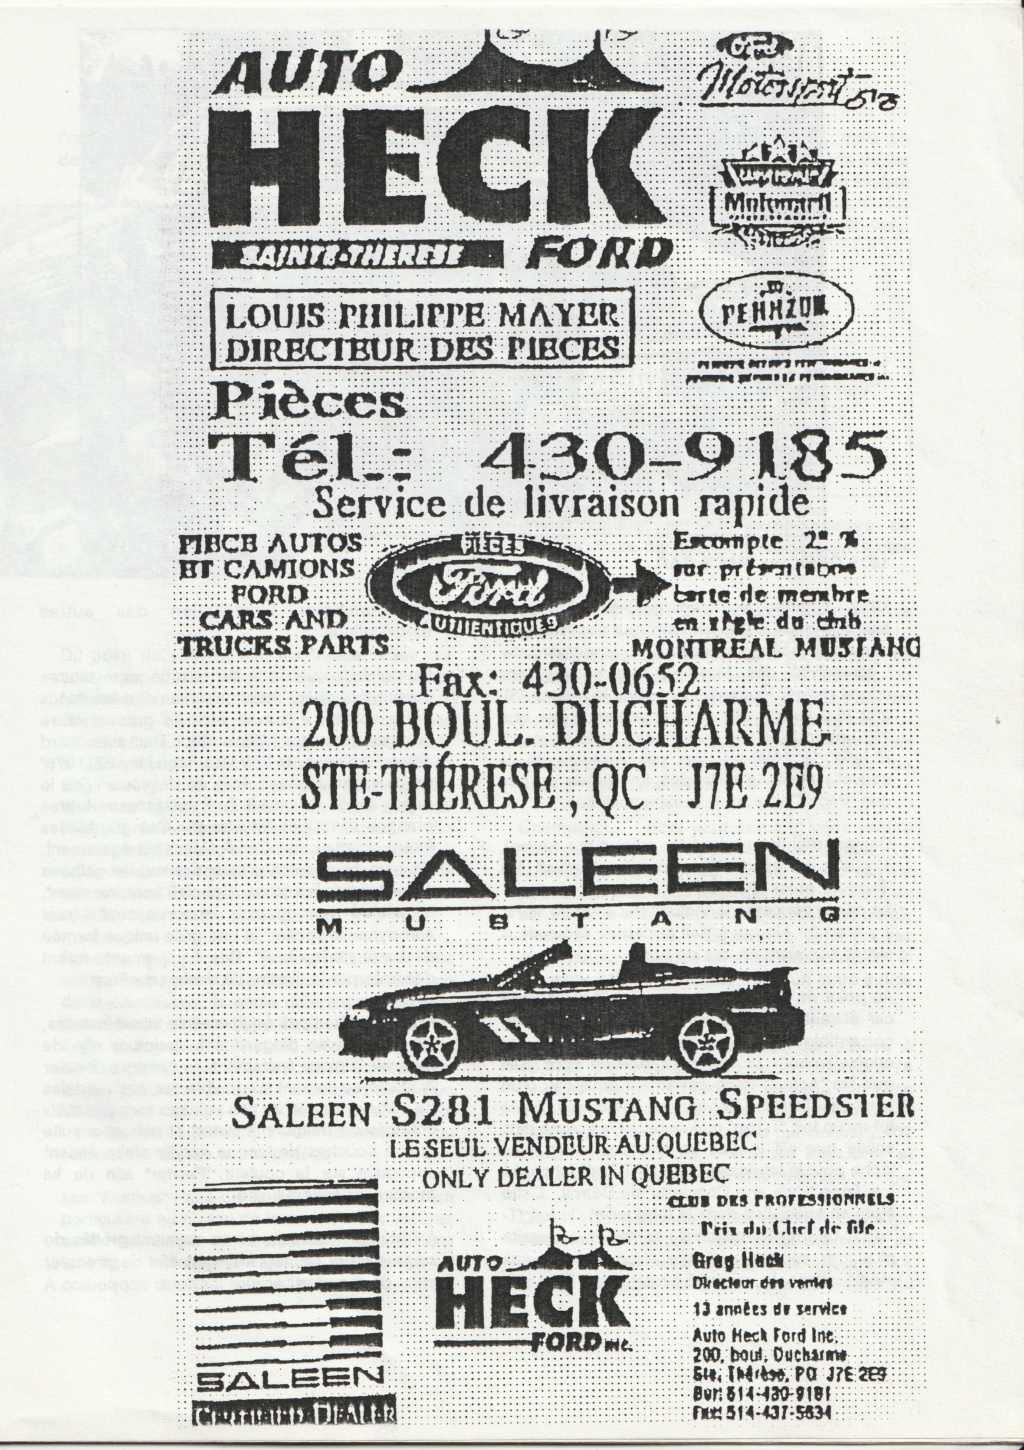 Montréal Mustang dans le temps! 1981 à aujourd'hui (Histoire en photos) - Page 8 Img_2445